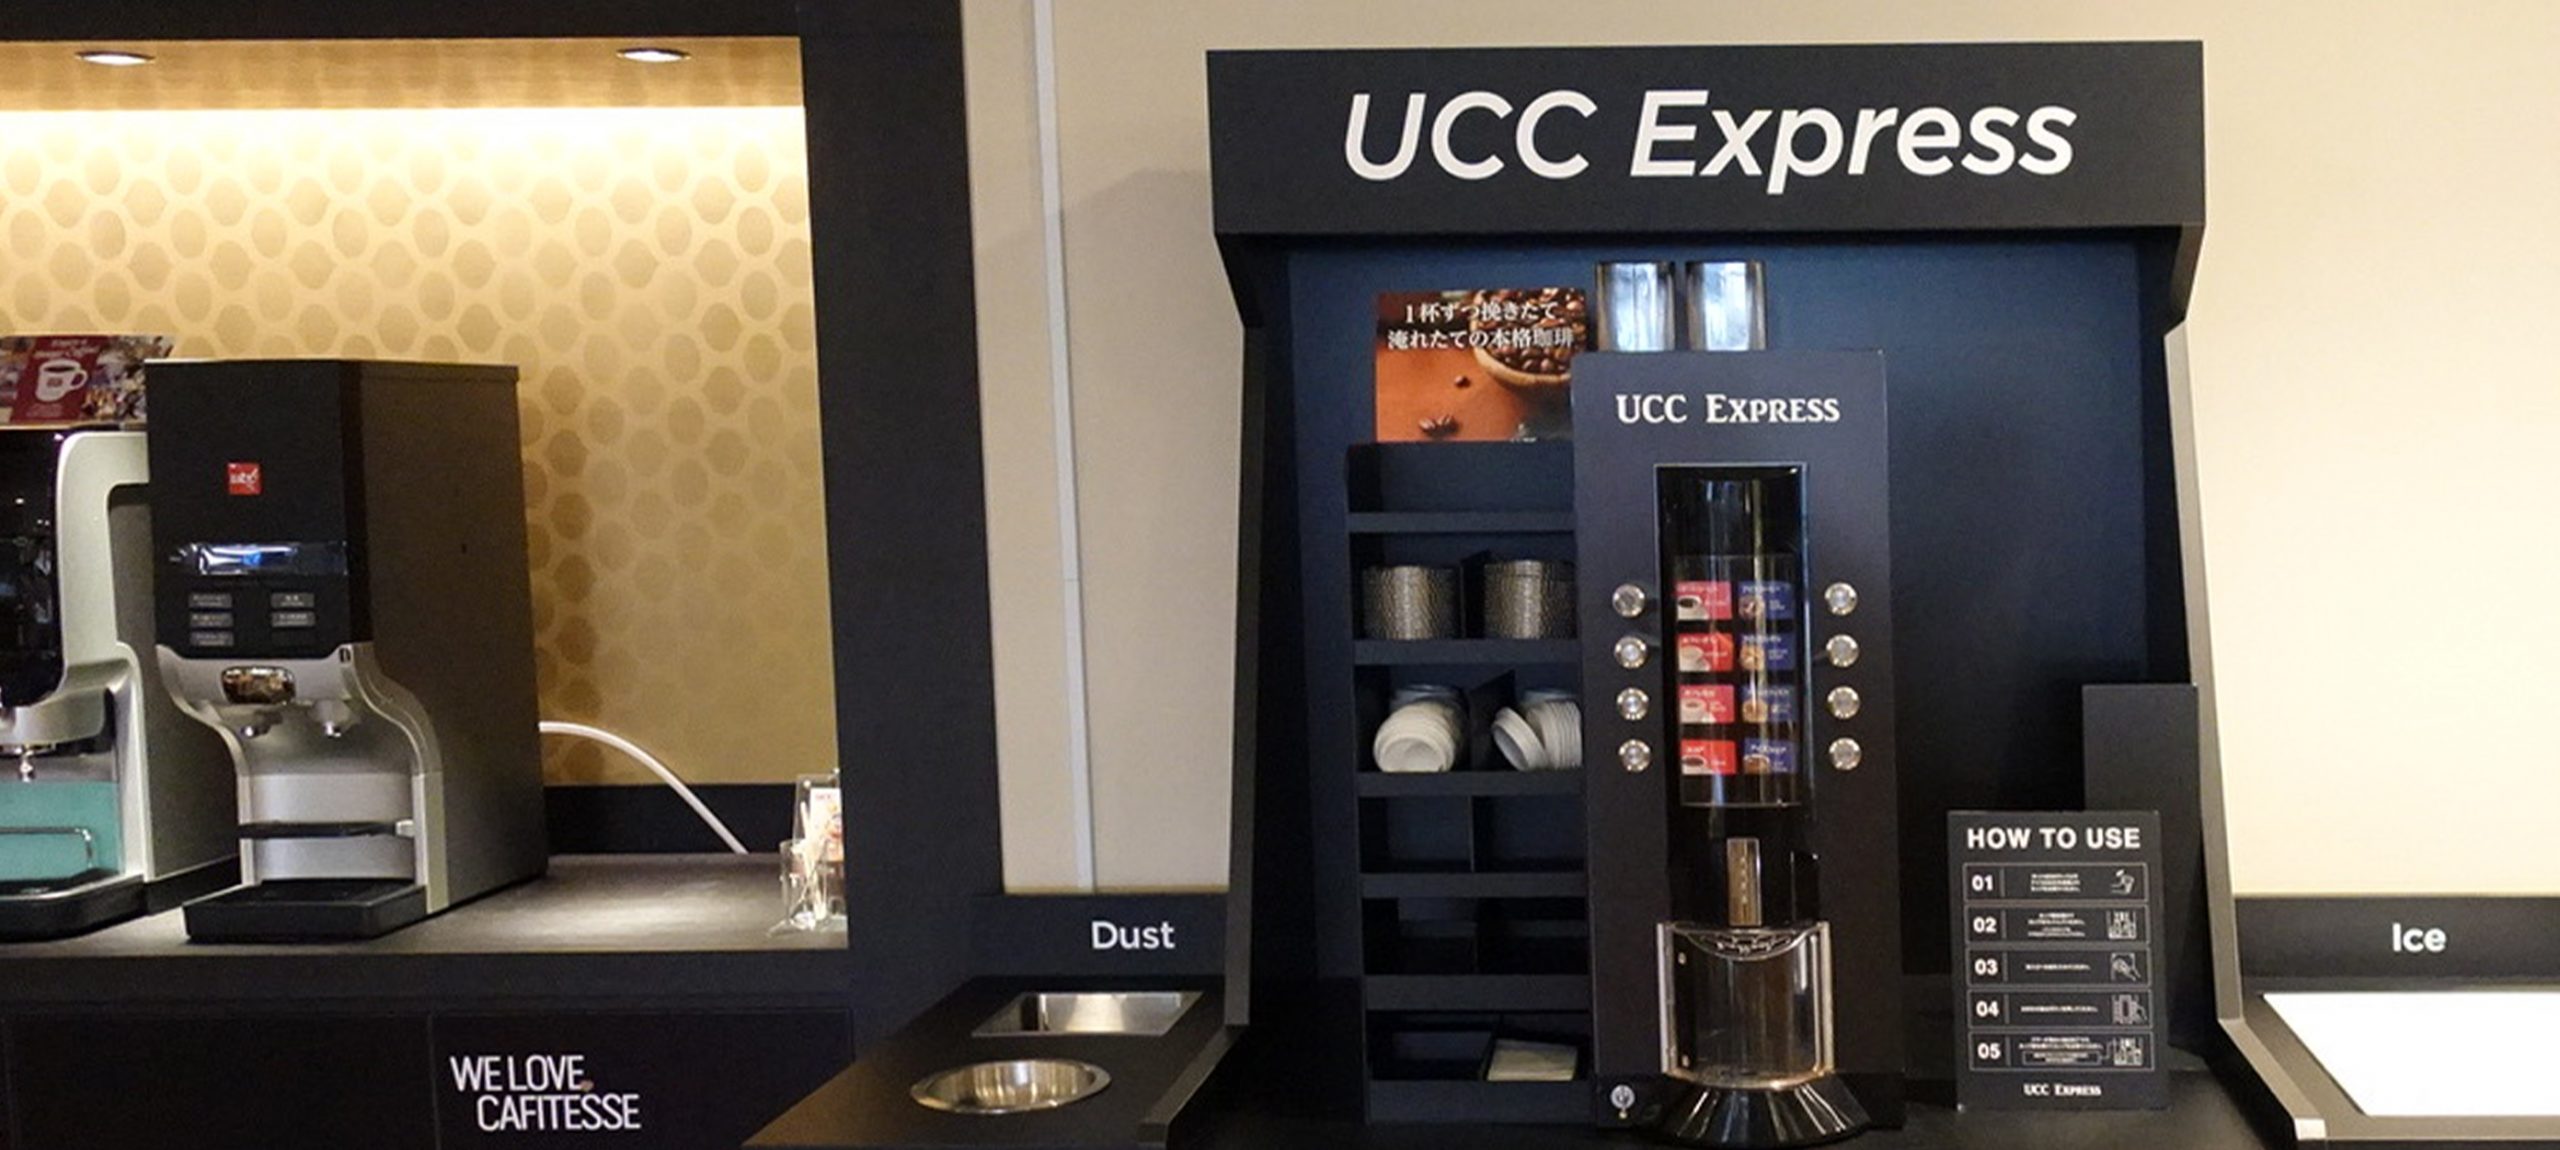 東京のUCCコーヒーアカデミーに設置された無人型コーヒースタンド「UCC Express」の画像